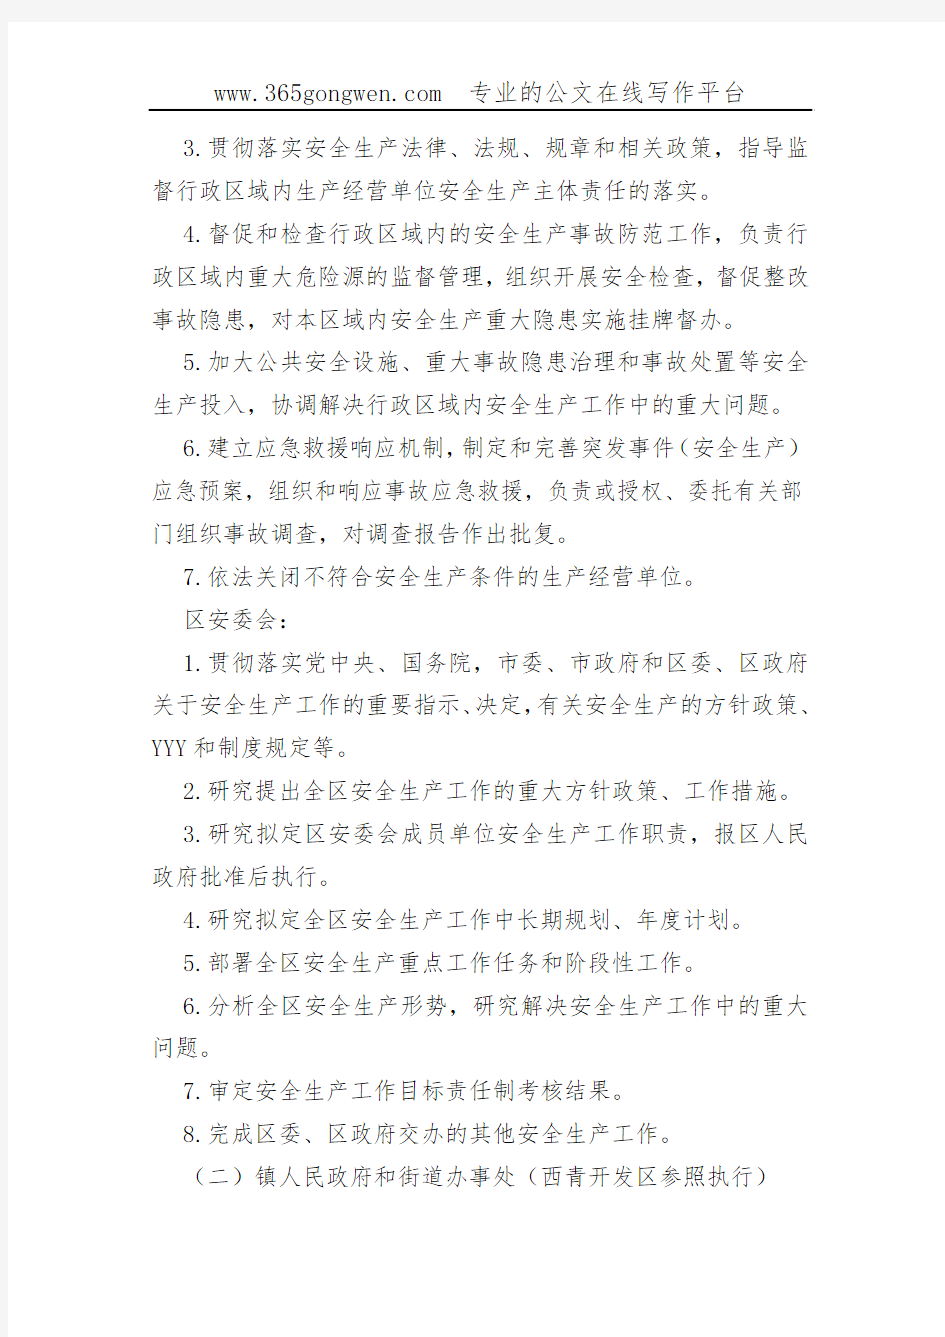 【安监意见】天津市西青区关于进一步明确和规范安全生产工作职责的意见